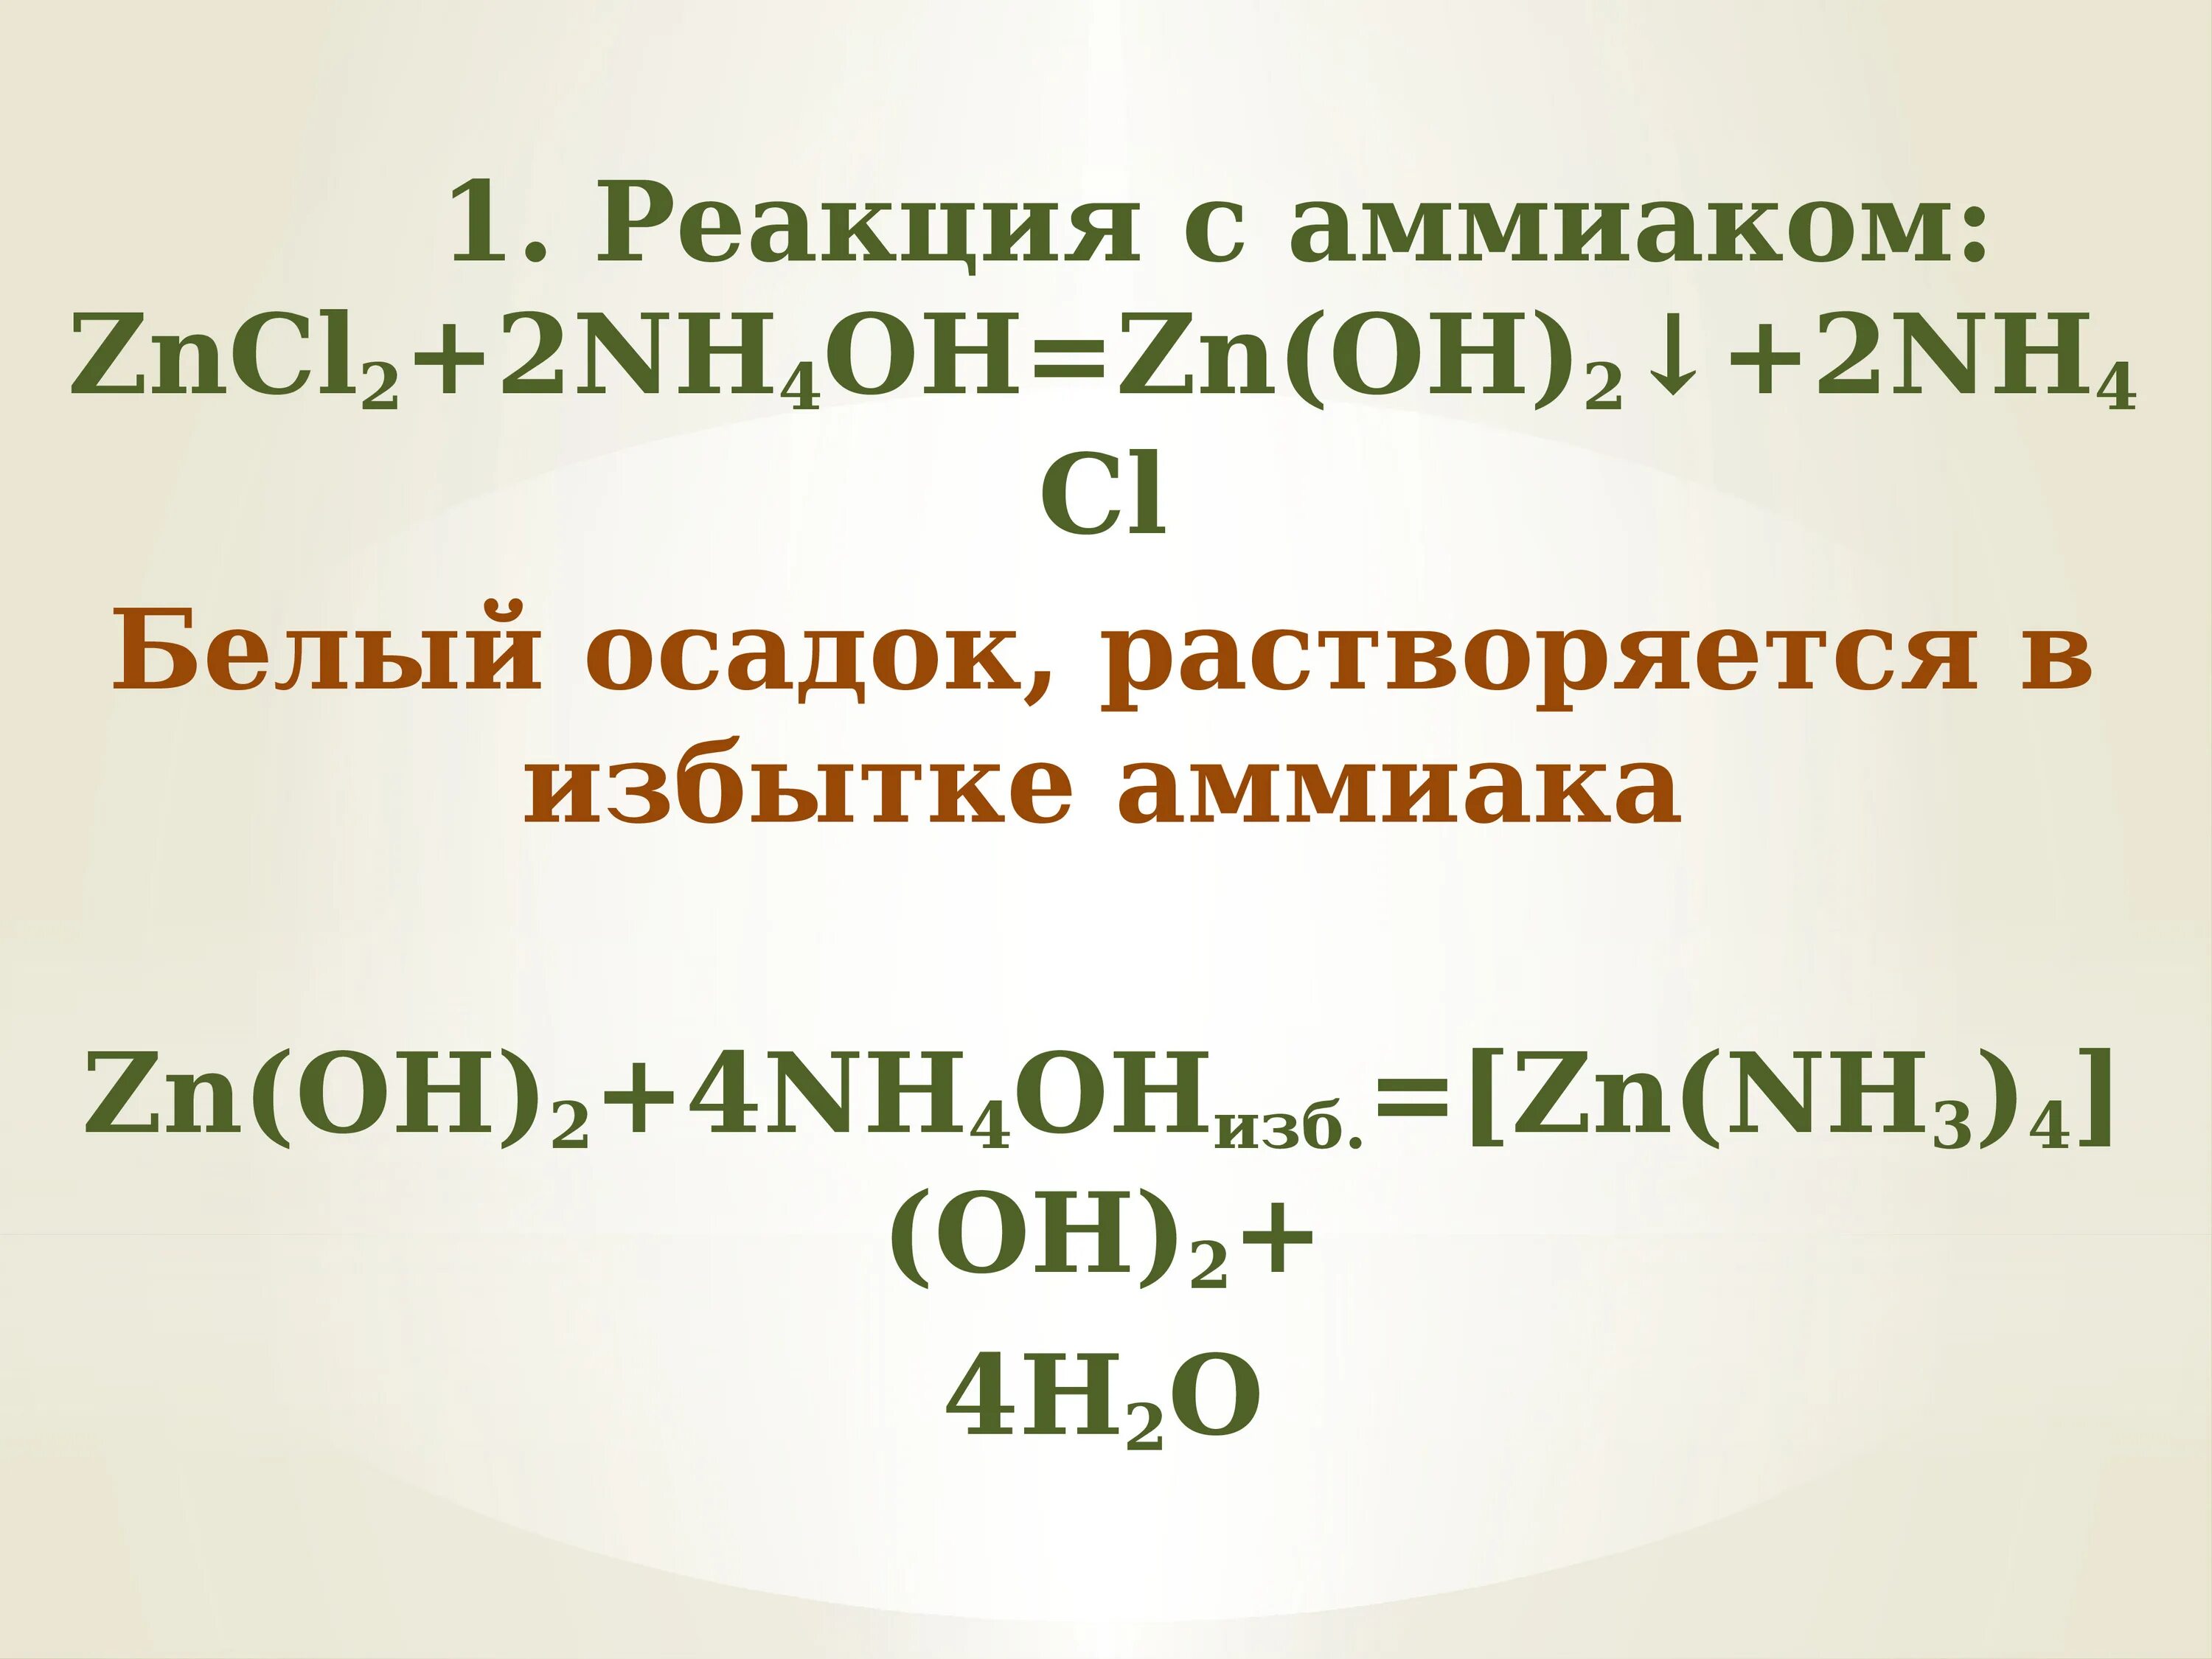 Zn zncl2 zn oh 2 h2o. Zncl2 nh3 h2o. ZN Oh 2 nh4oh. Zncl2 nh4oh. [ZN(nh3)4](Oh)2.